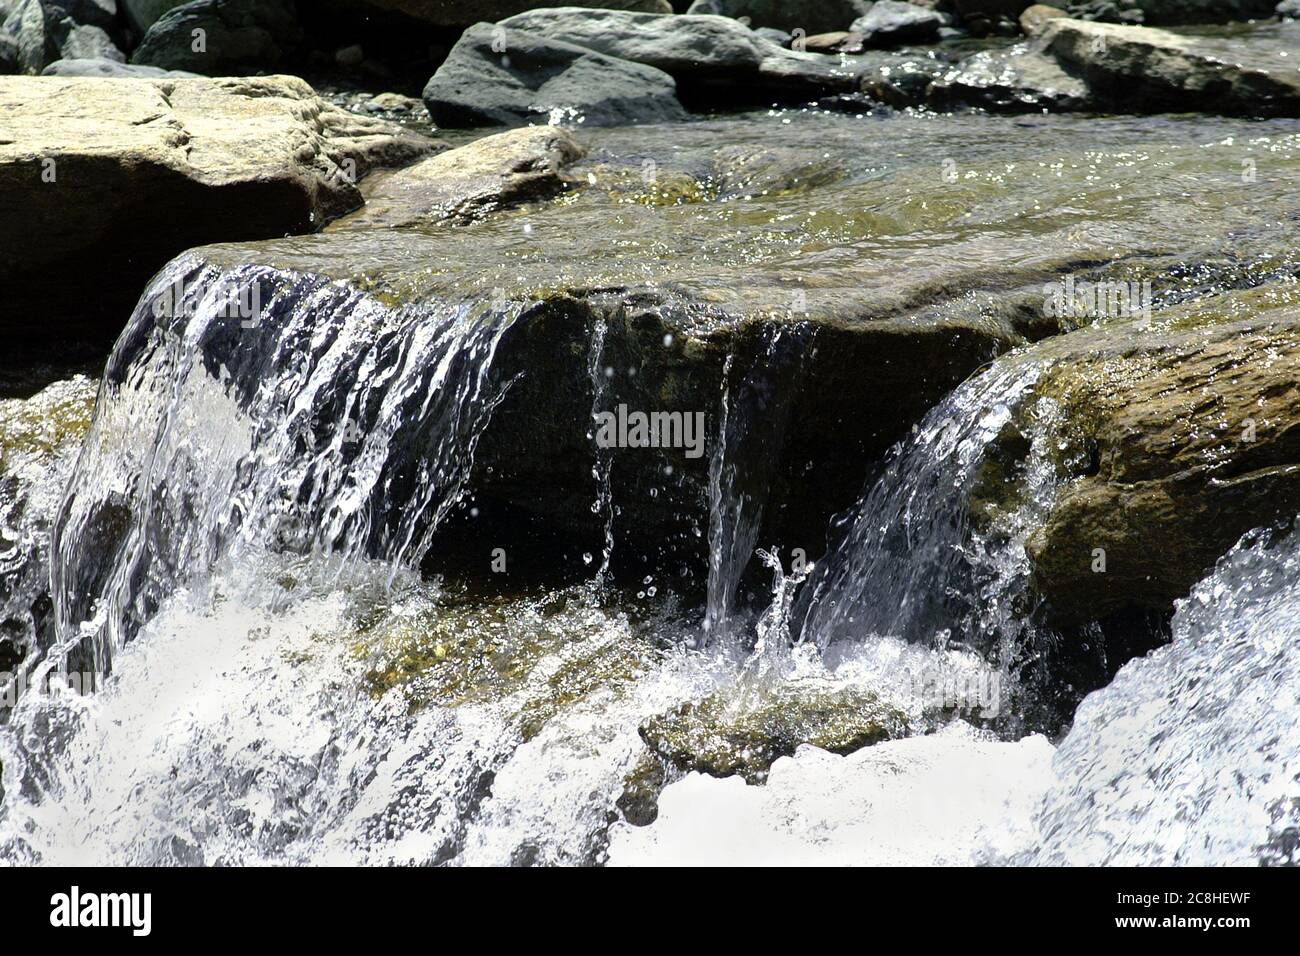 Chiare e fresche acque fluenti in torrenti alpini della Valle d'Aosta, Italia. Foto Stock